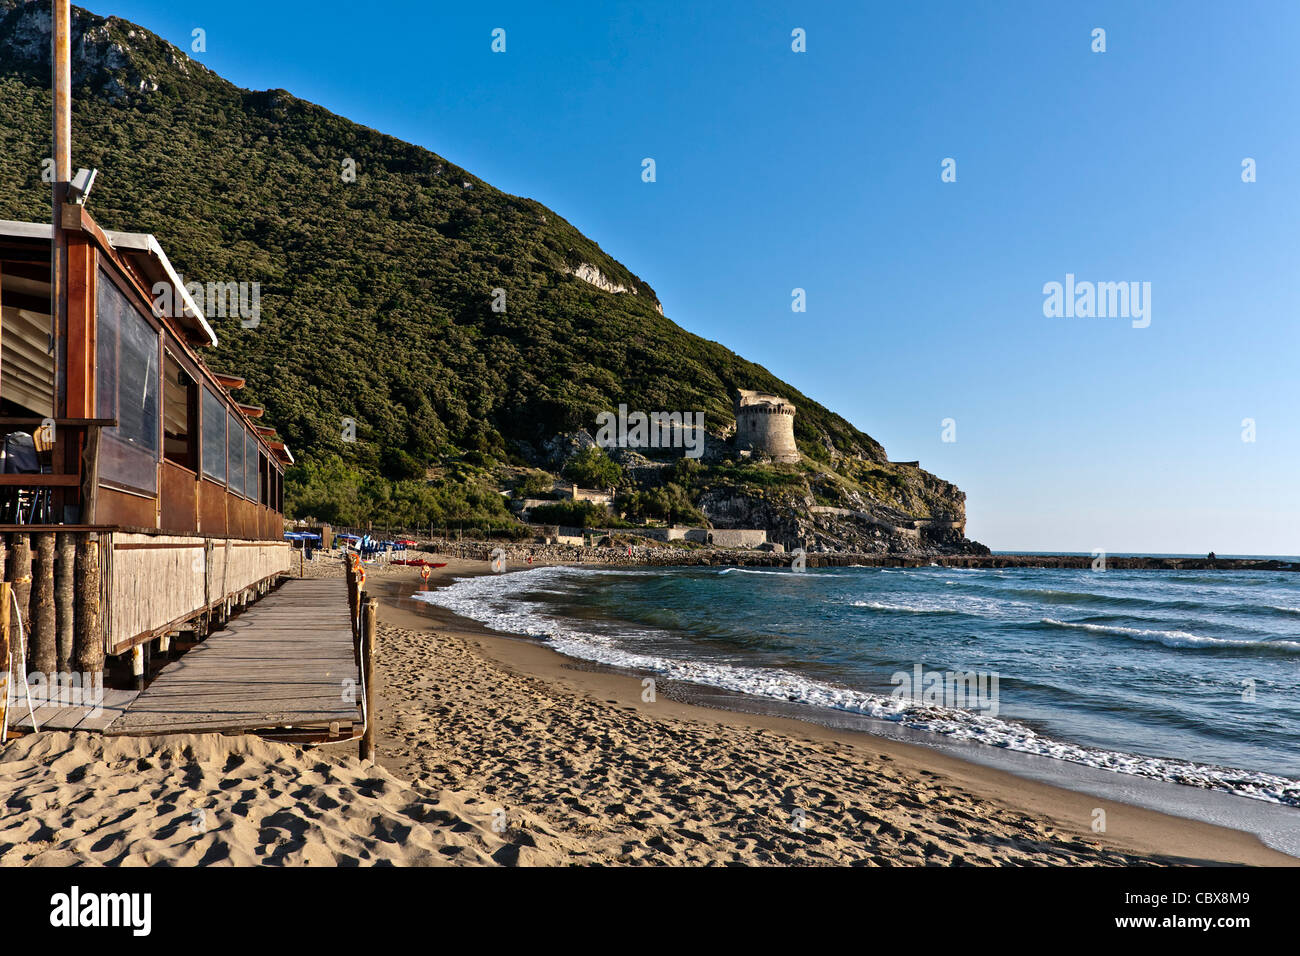 Sabaudia beach immagini e fotografie stock ad alta risoluzione - Alamy